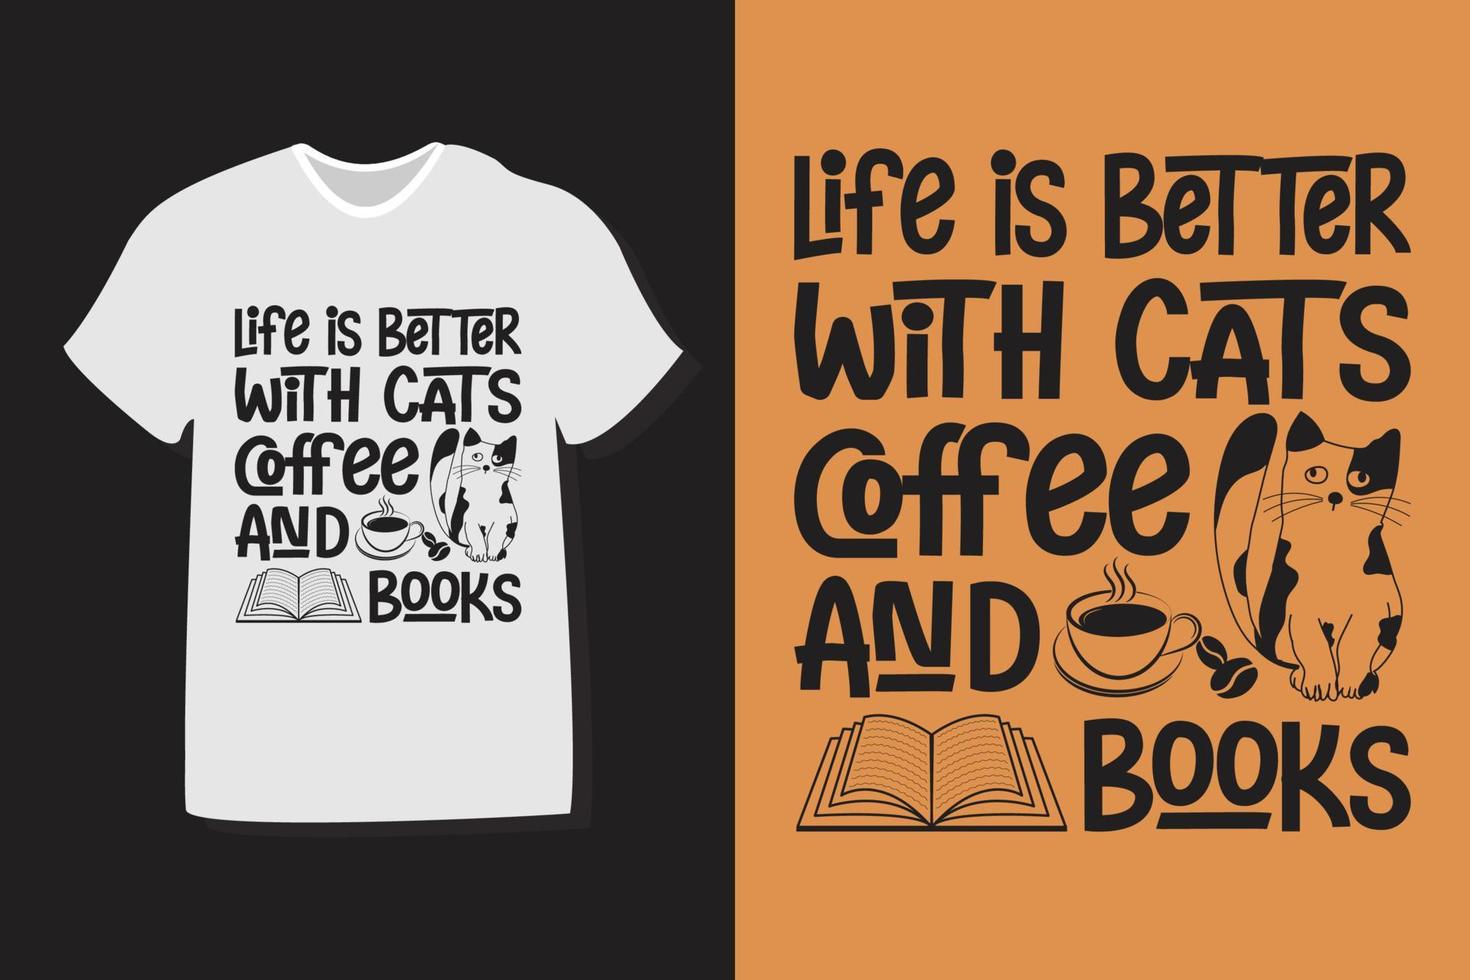 liv är bättre med kaffe katter och böcker. kaffe typografi design för t-shirts, skriva ut, mallar, logotyper, råna vektor